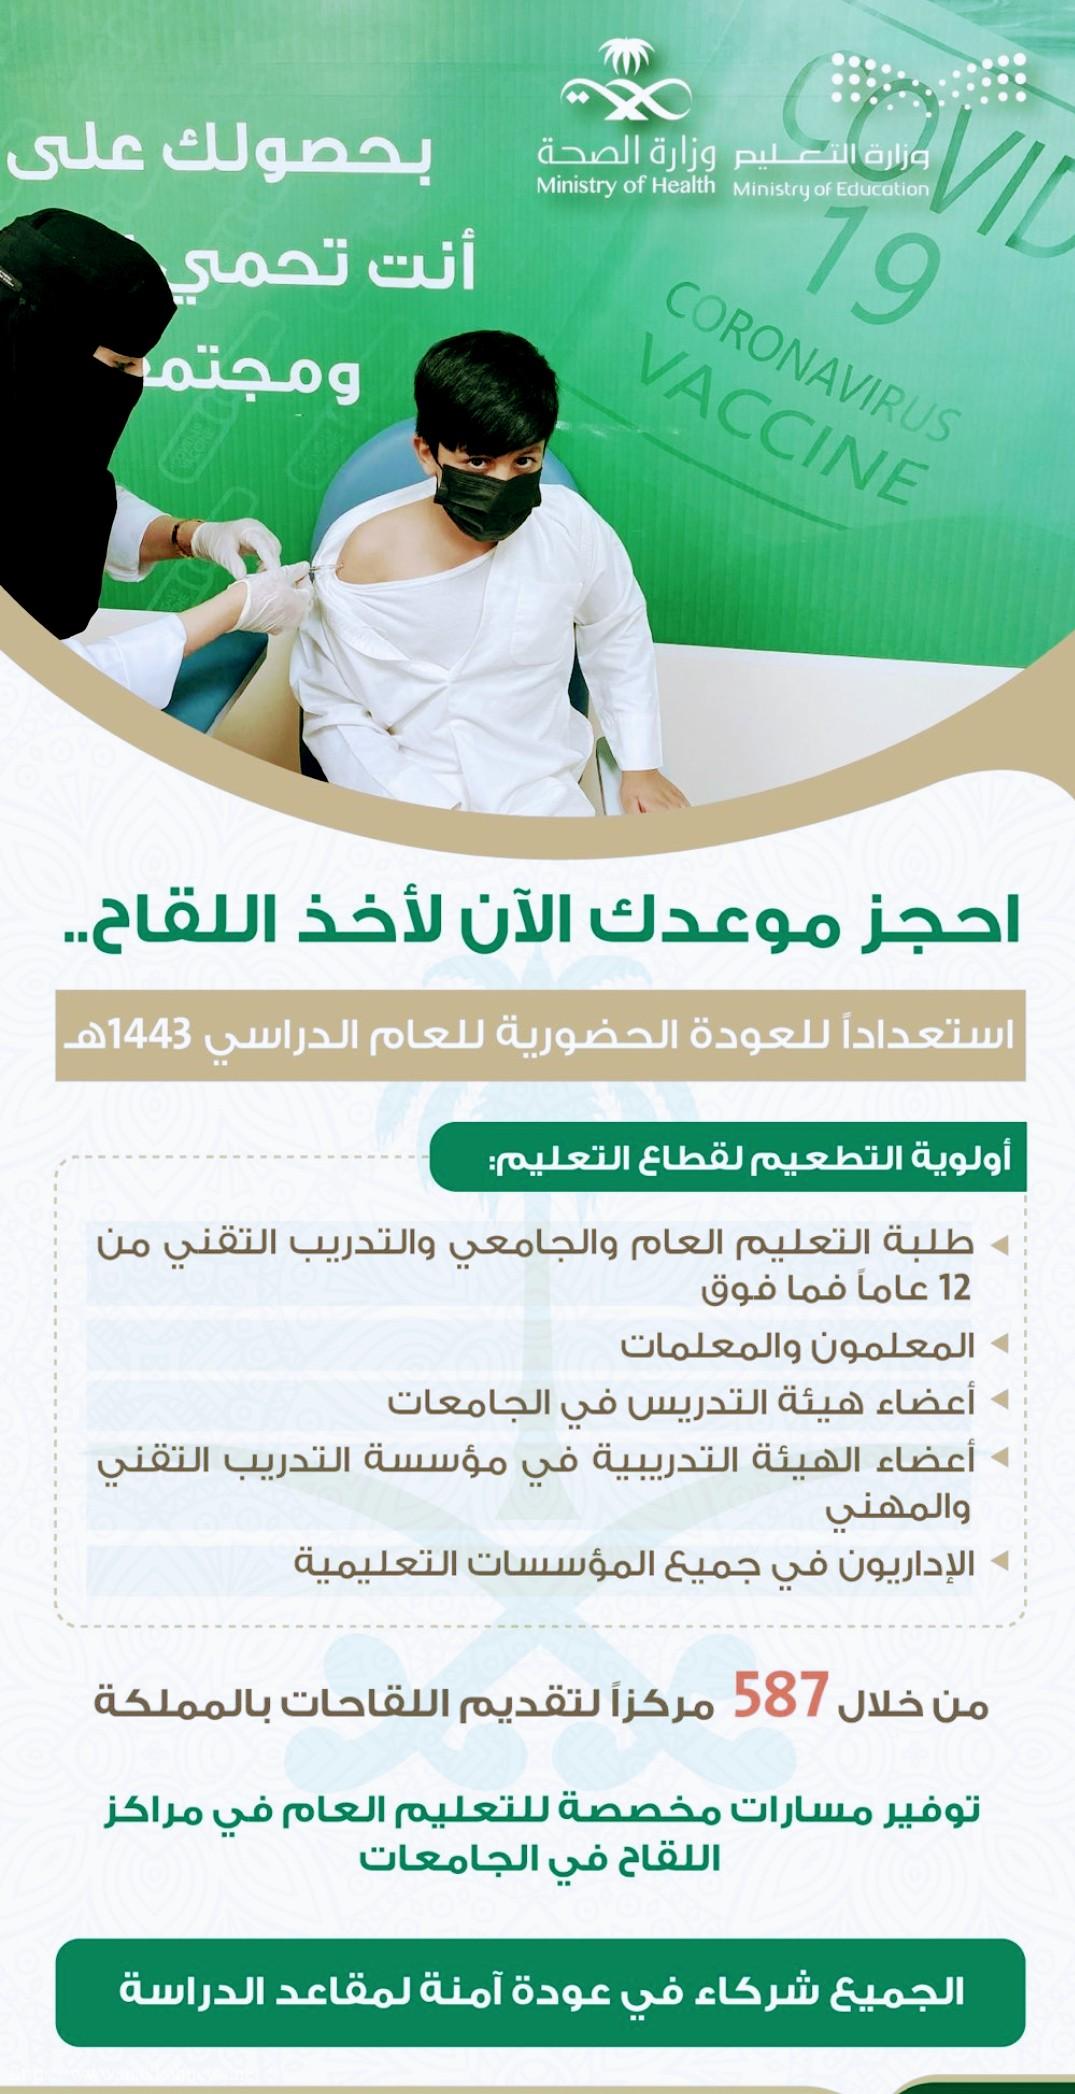 مكة العكيشية مركز صحي صحيفة المدينة